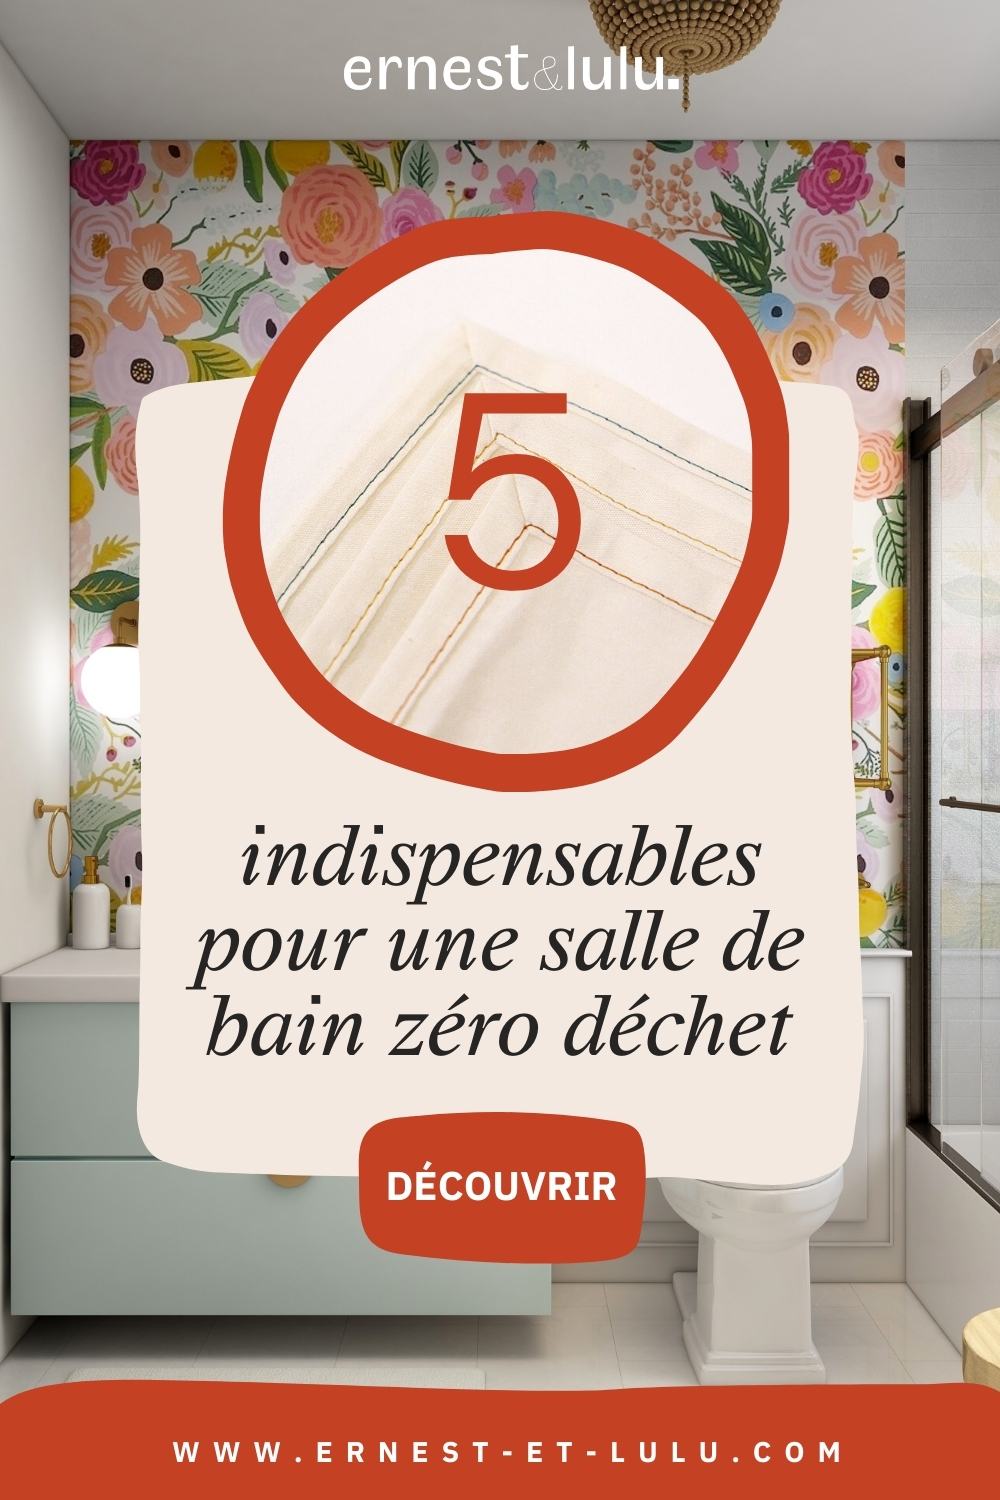 ernest&lulu - Apprendre à faire votre lessive maison - DIY